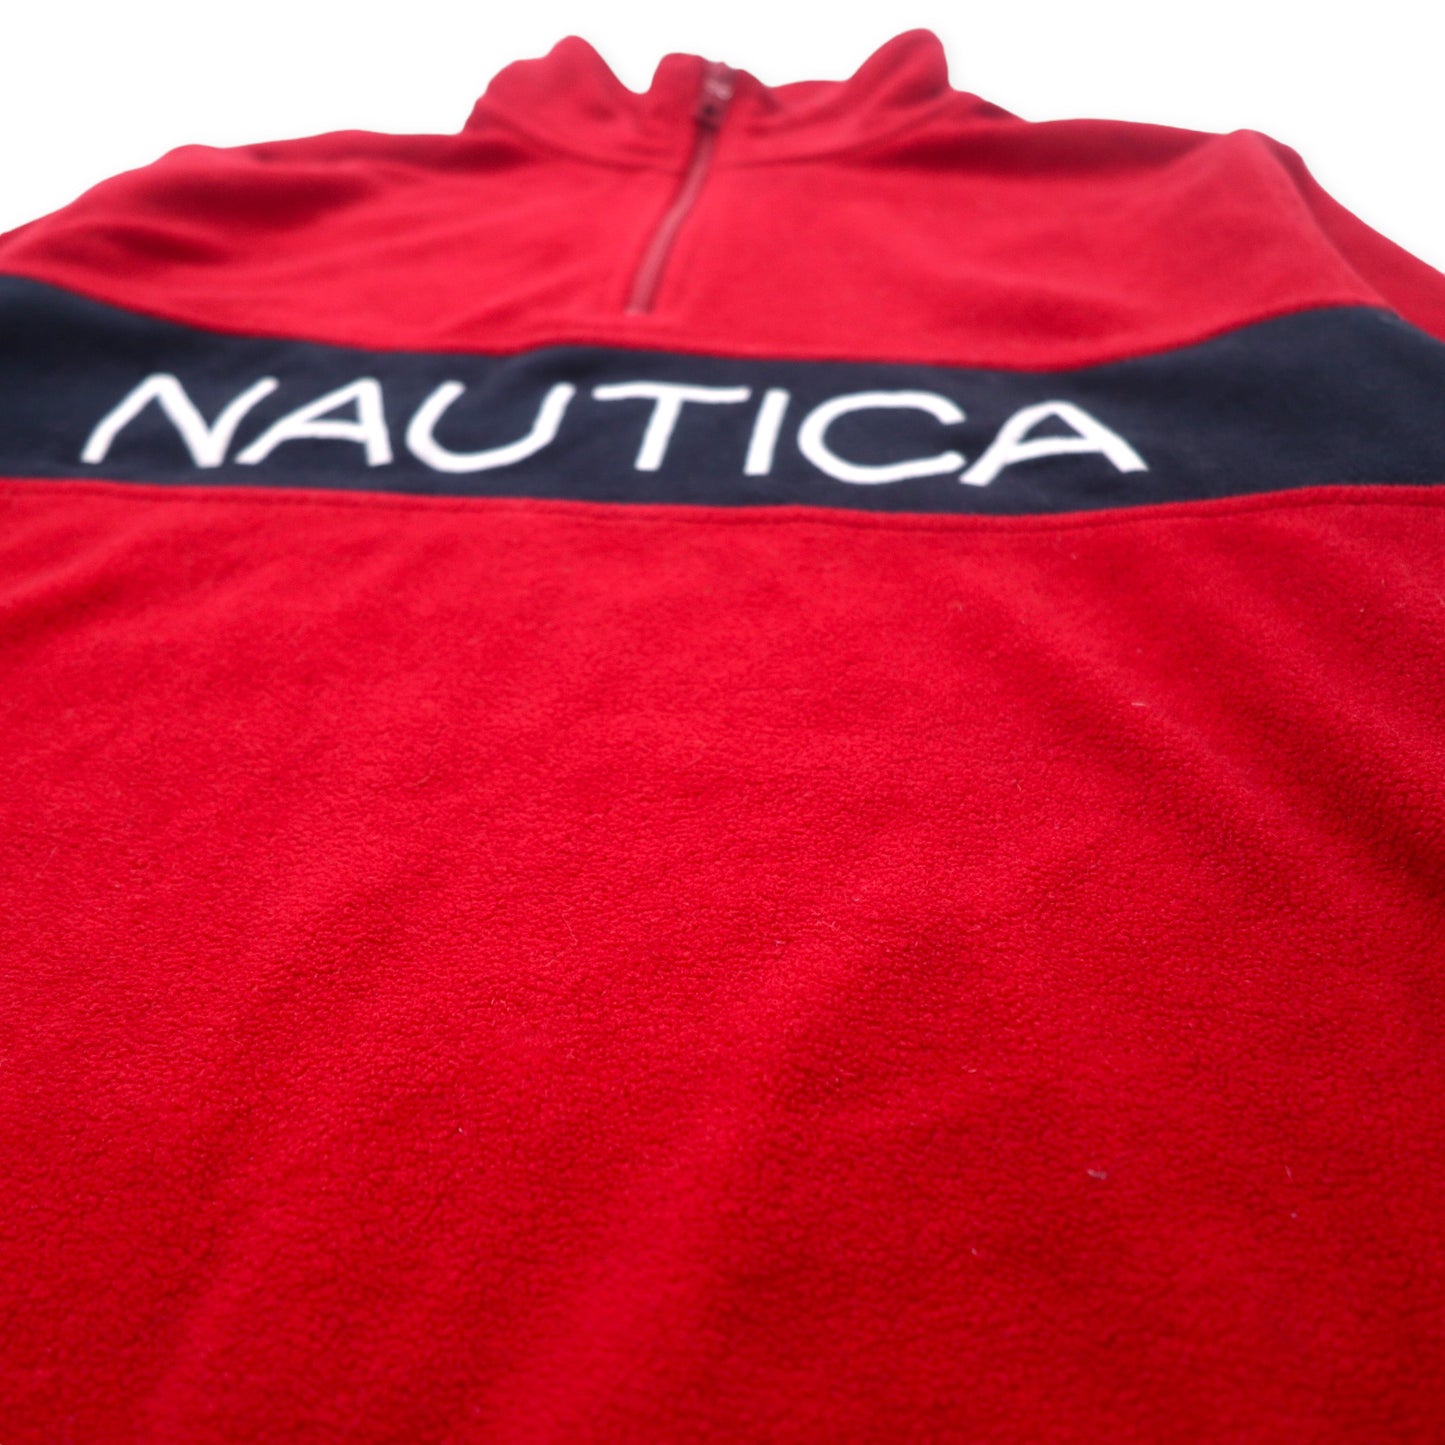 NAUTICA ハーフジップ フリースジャケット L レッド ネイビー ポリエステル ロゴ刺繍